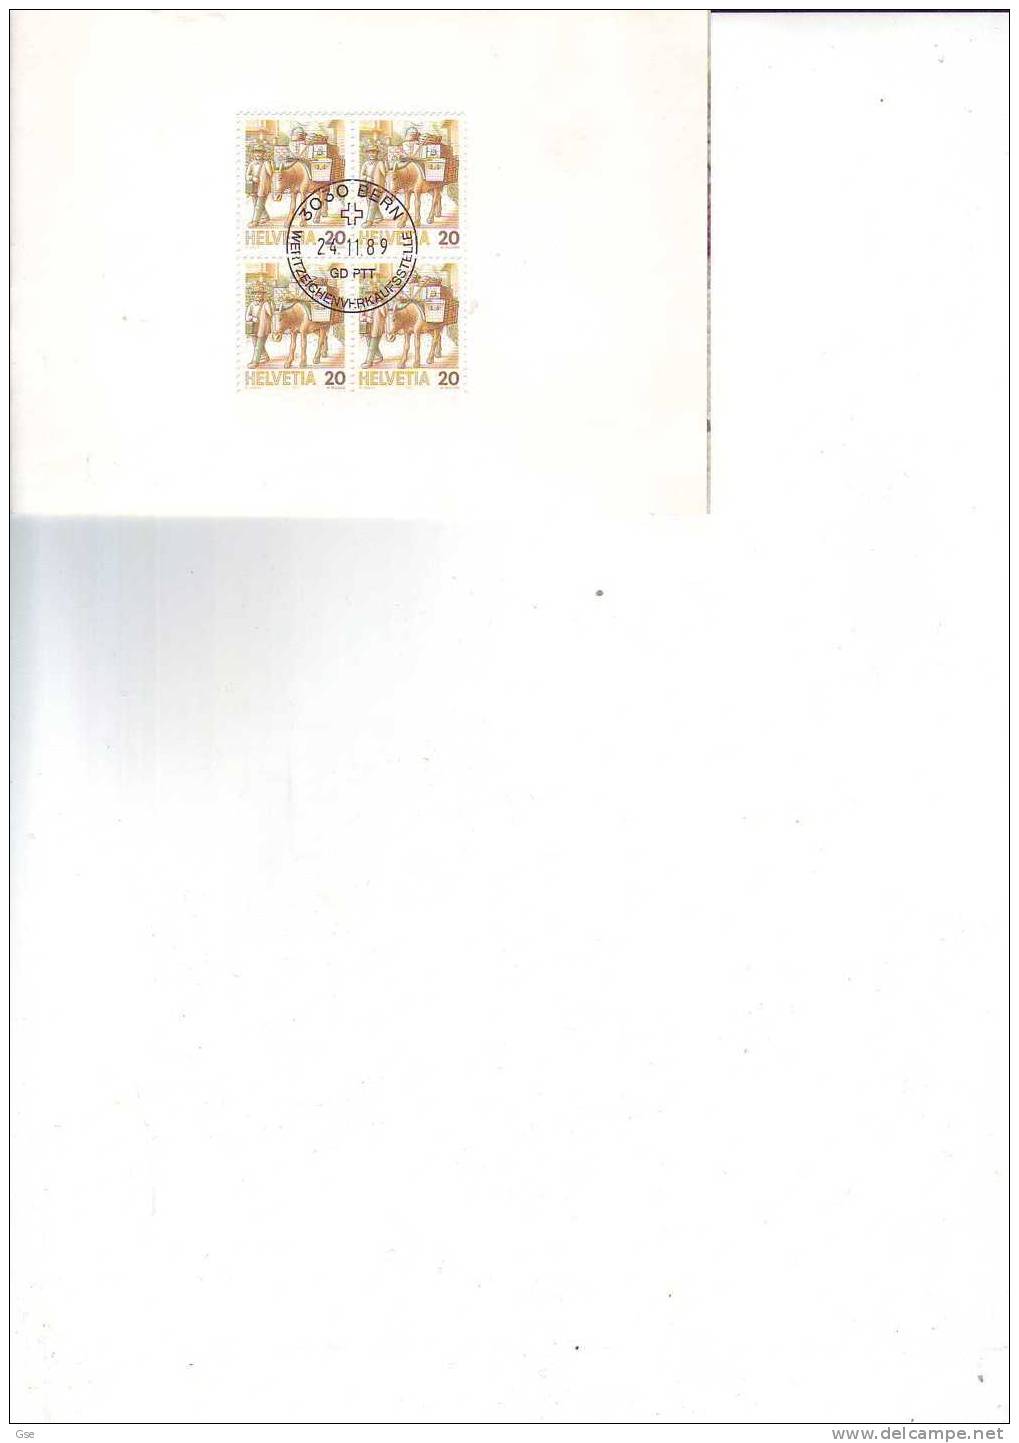 SVIZZERA 1989 - Yvert  1264 (x4) - Cartoncino Con Annullo Speciale  Illustrato - Servizi Postali - Donkeys